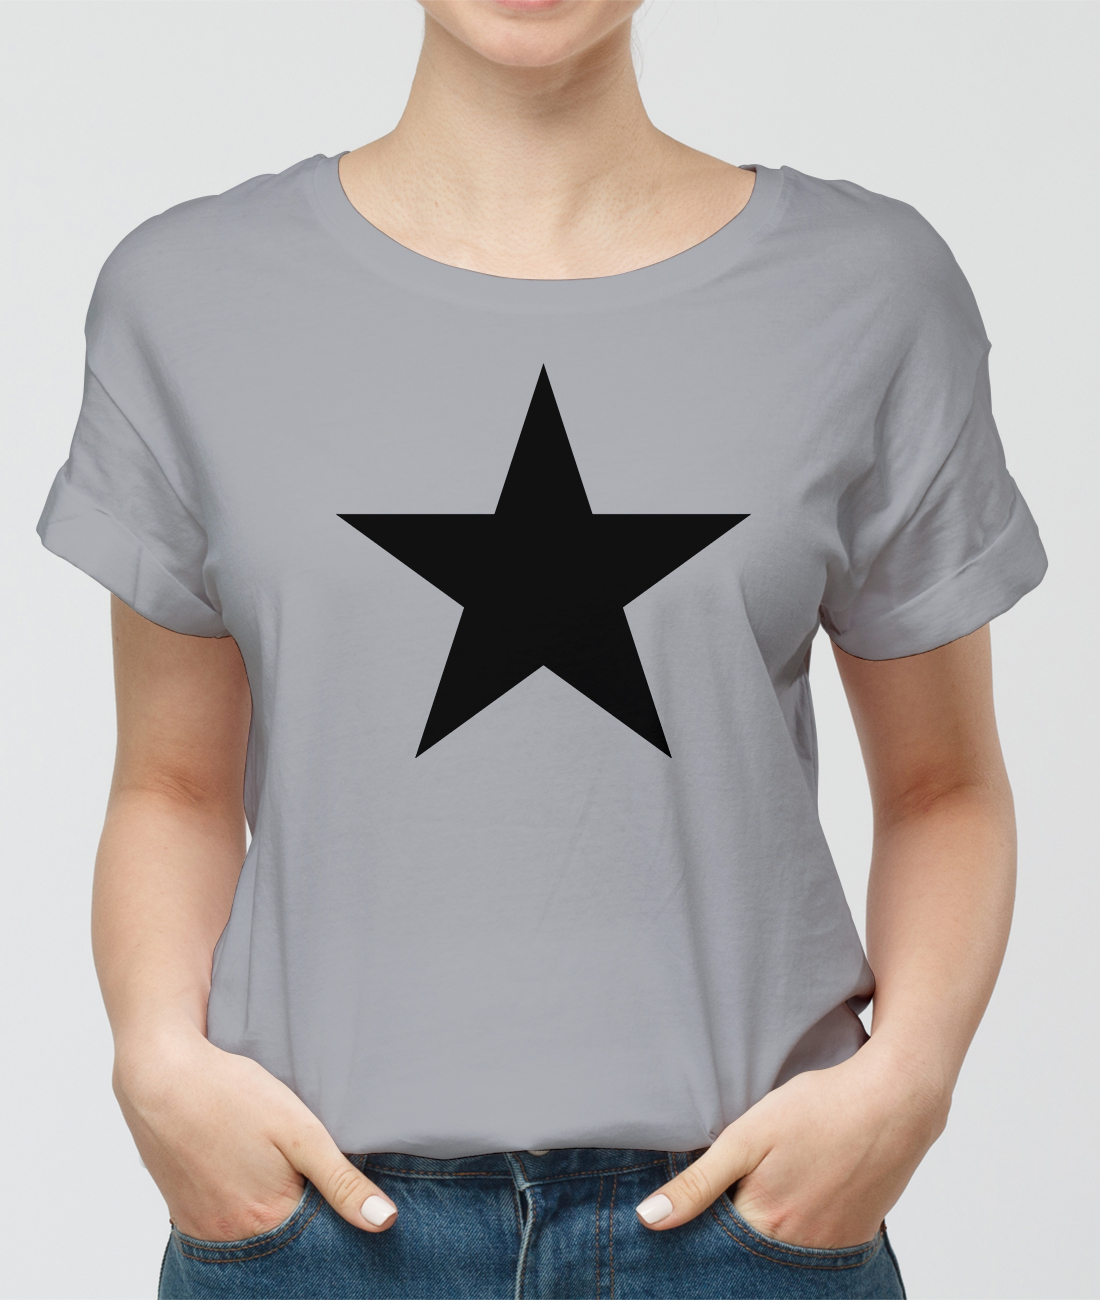 Black star tshirt